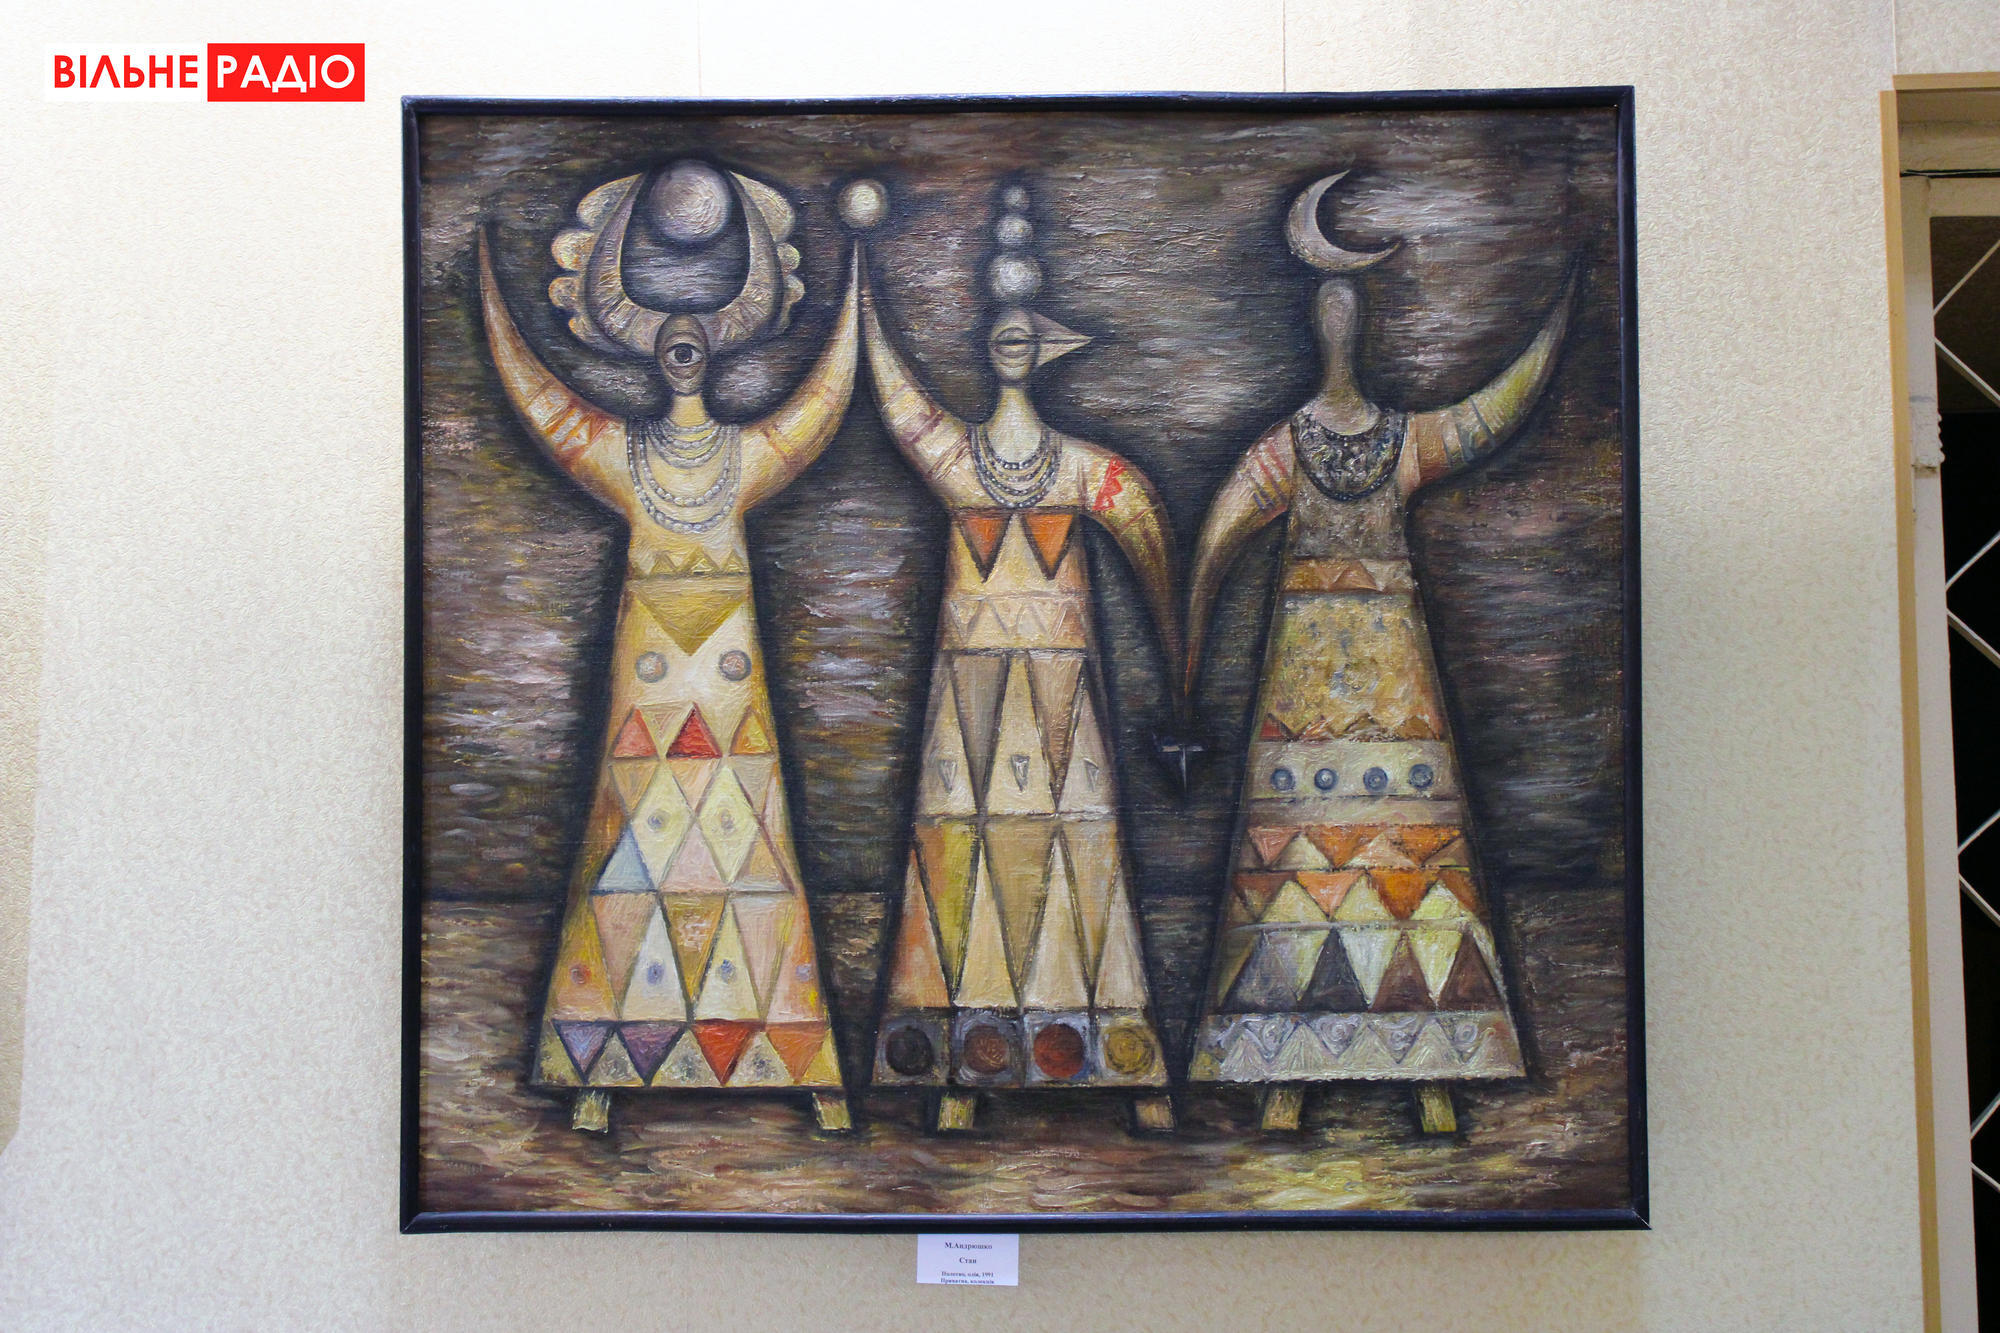 В Бахмуте открылась выставка авангардной живописи